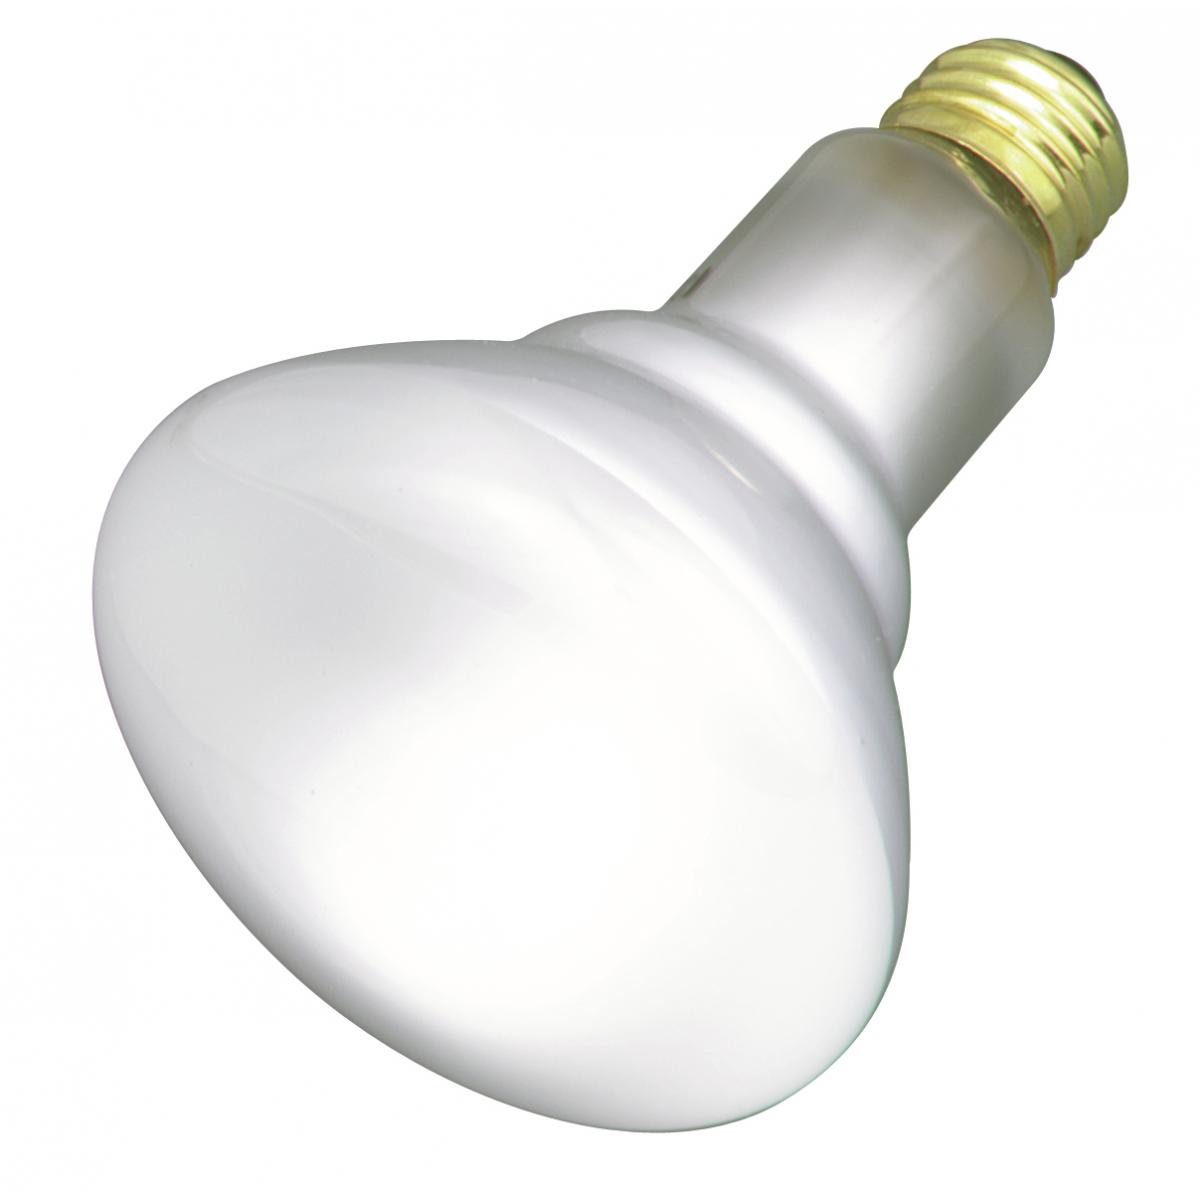 LED bulbs - Lighting, Page 2